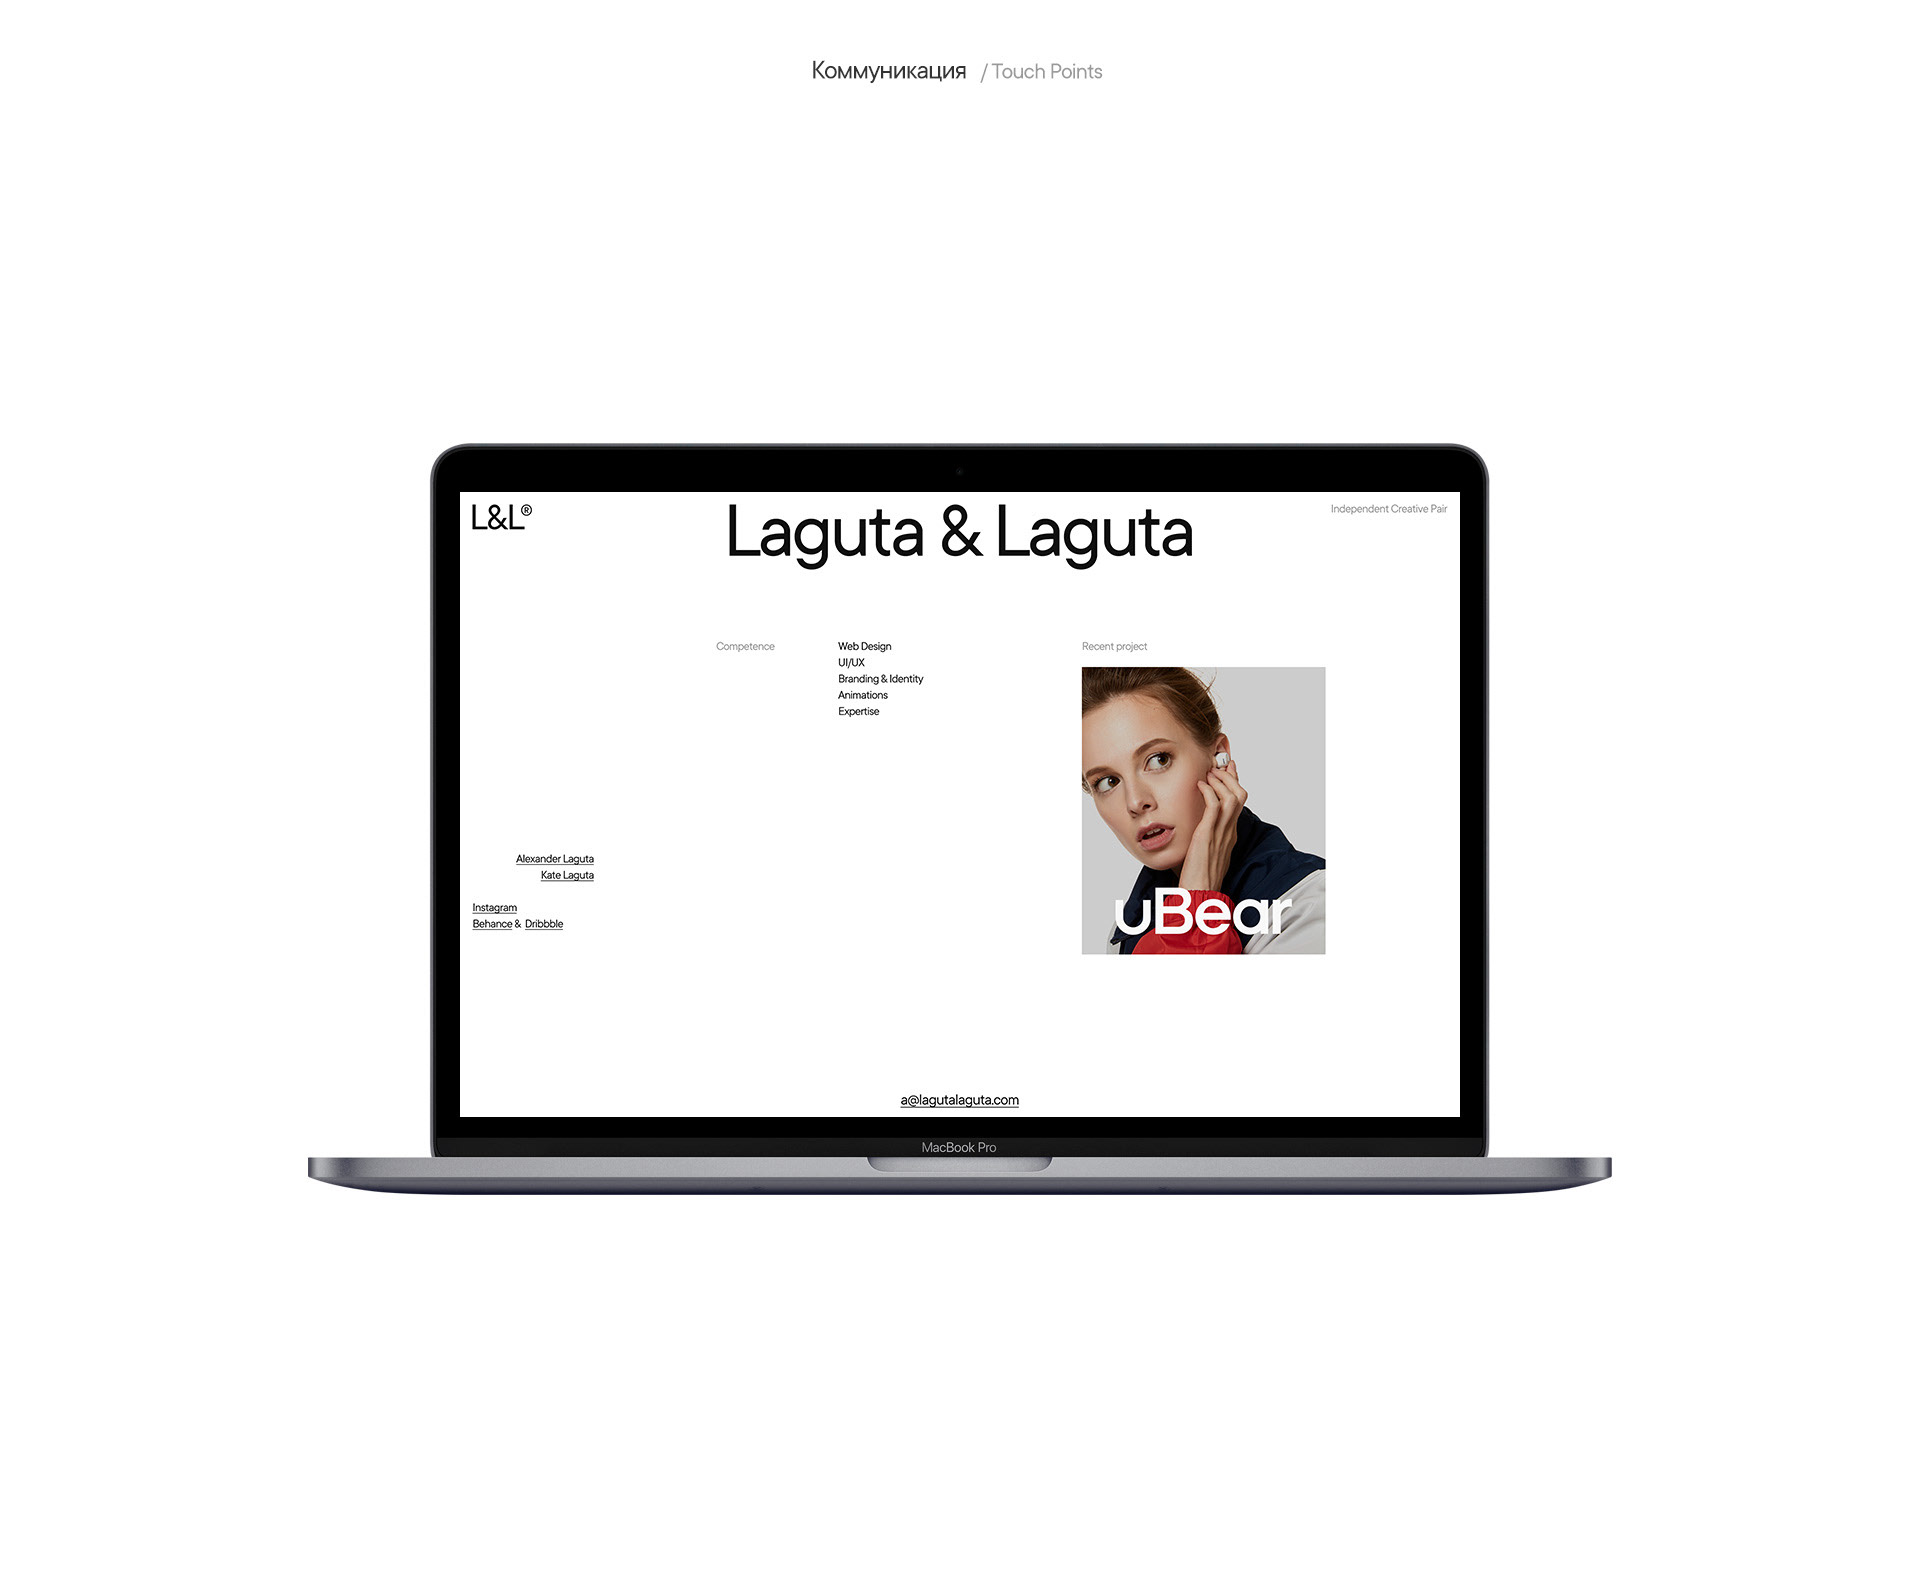 Laguta & Laguta — Изображение №3 — Интерфейсы, Анимация на Dprofile